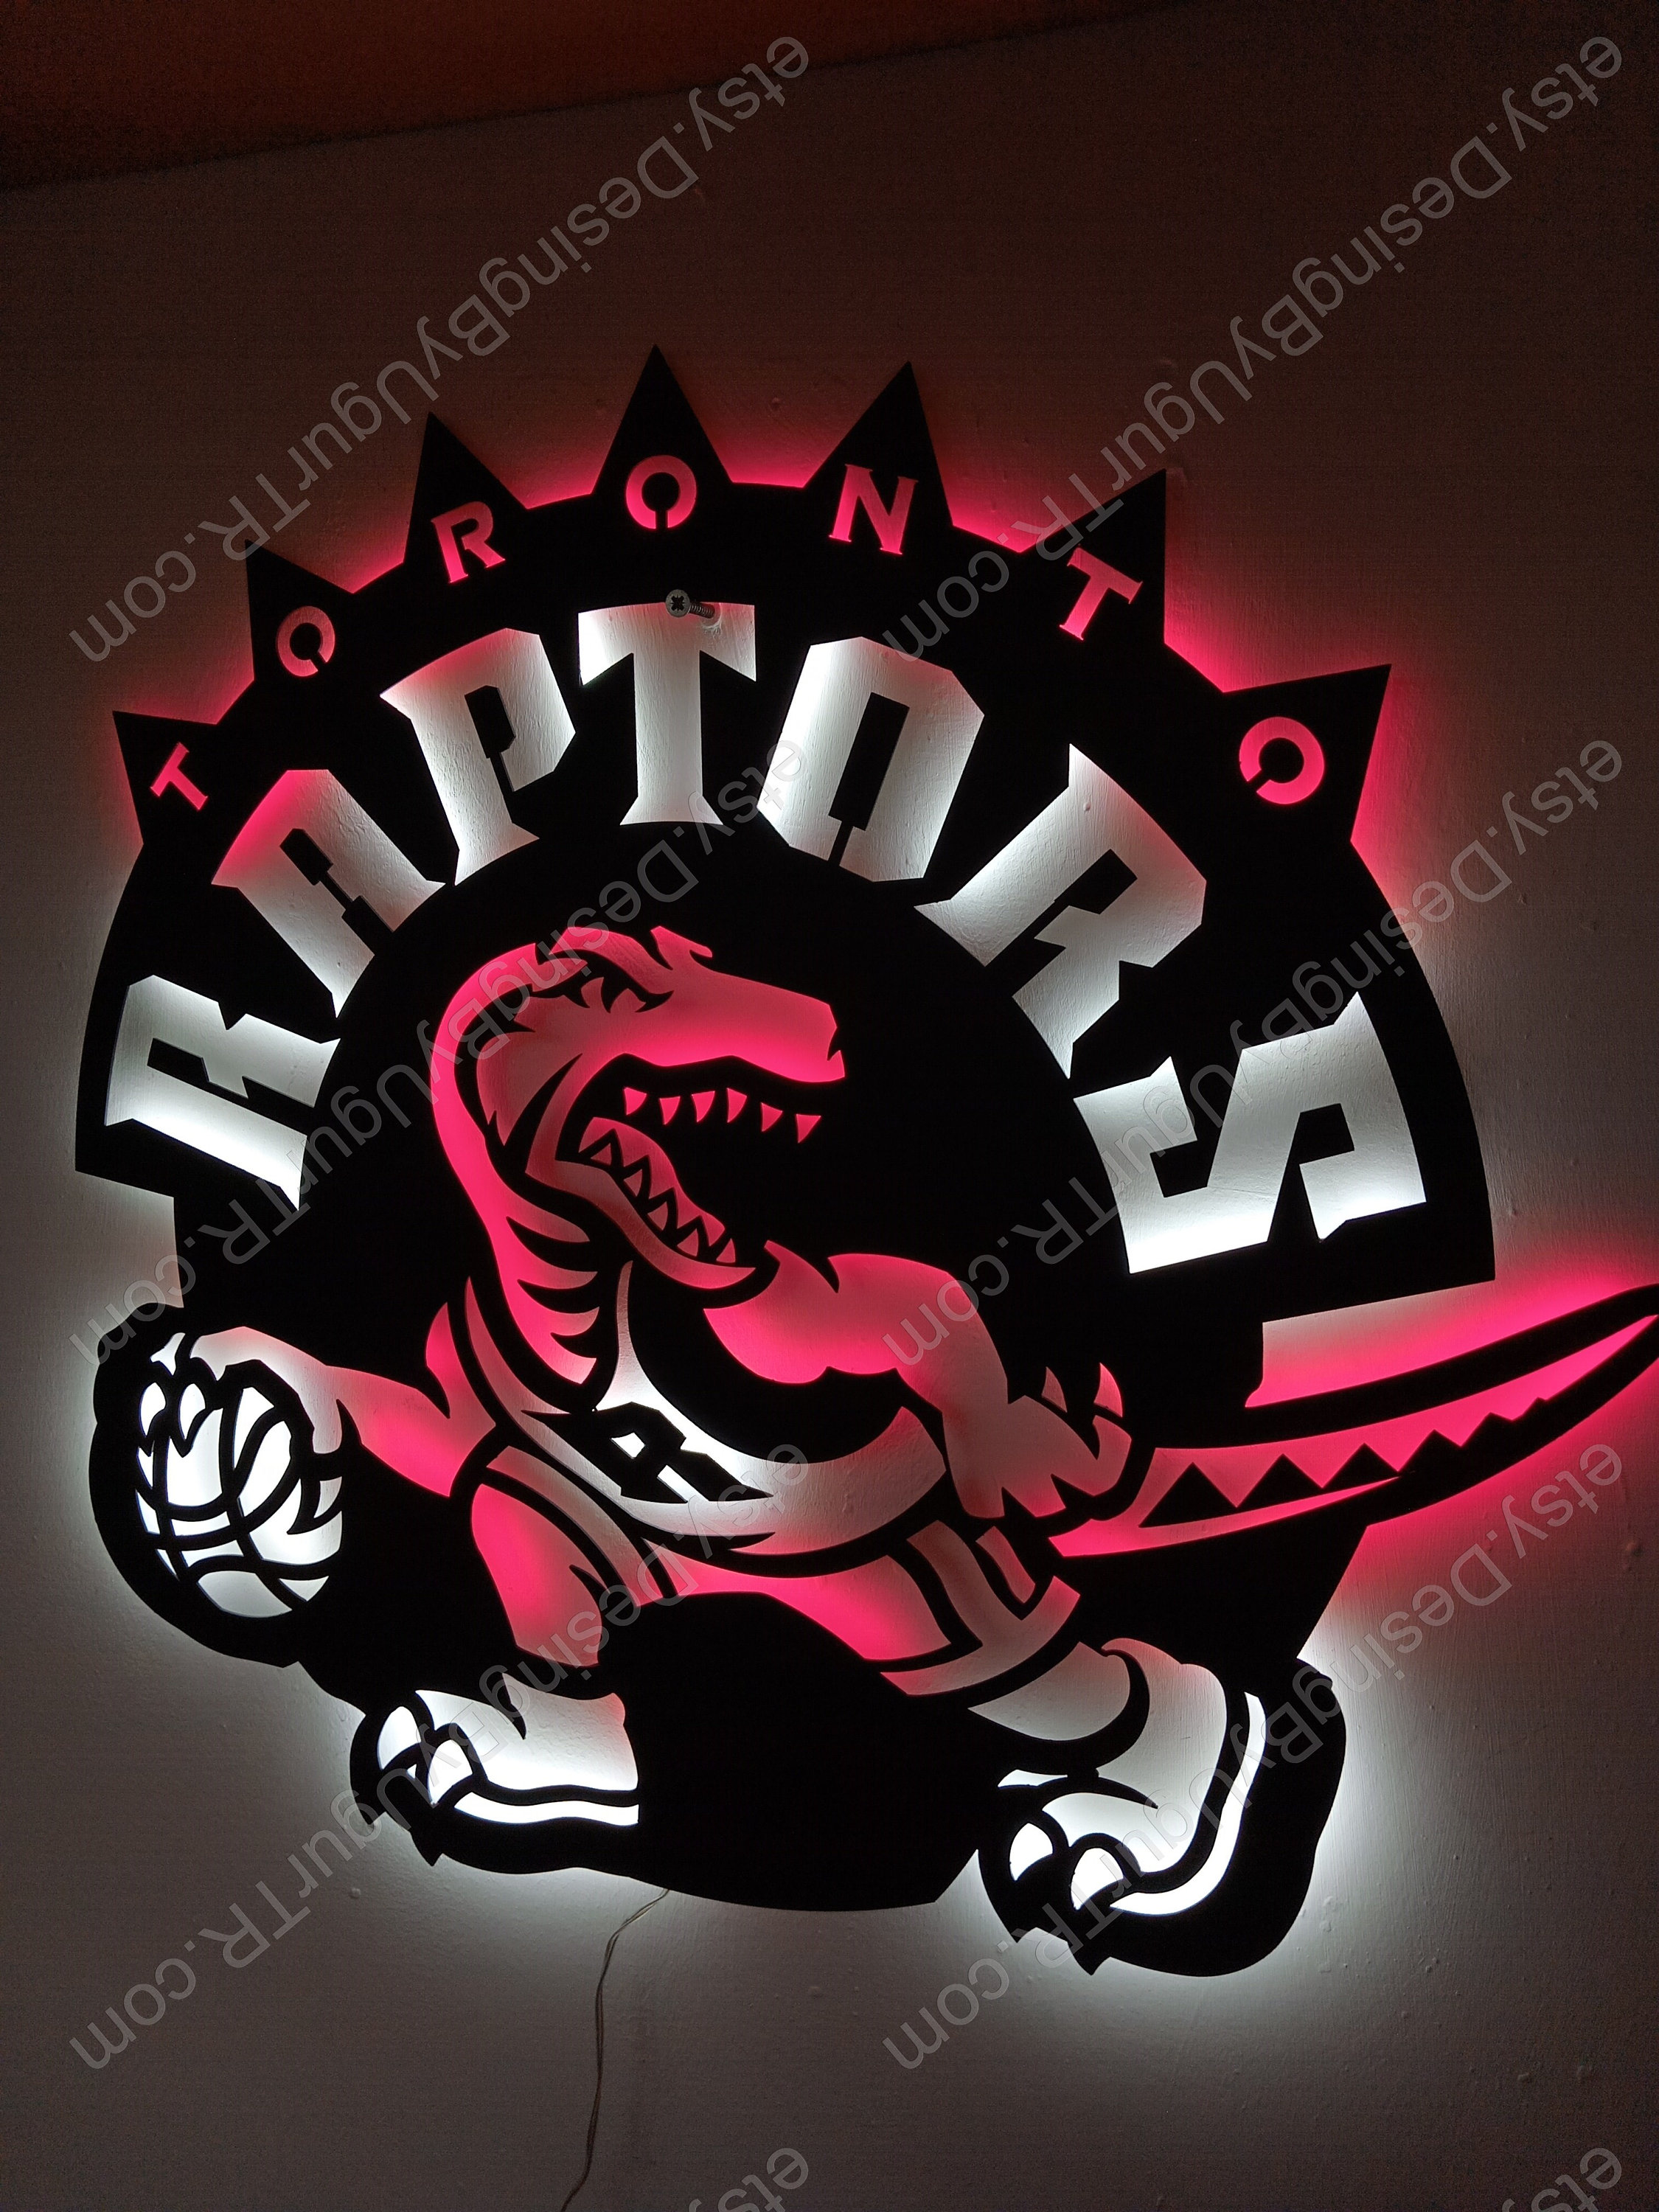 Toronto Raptors Gift - 60+ Gift Ideas for 2023